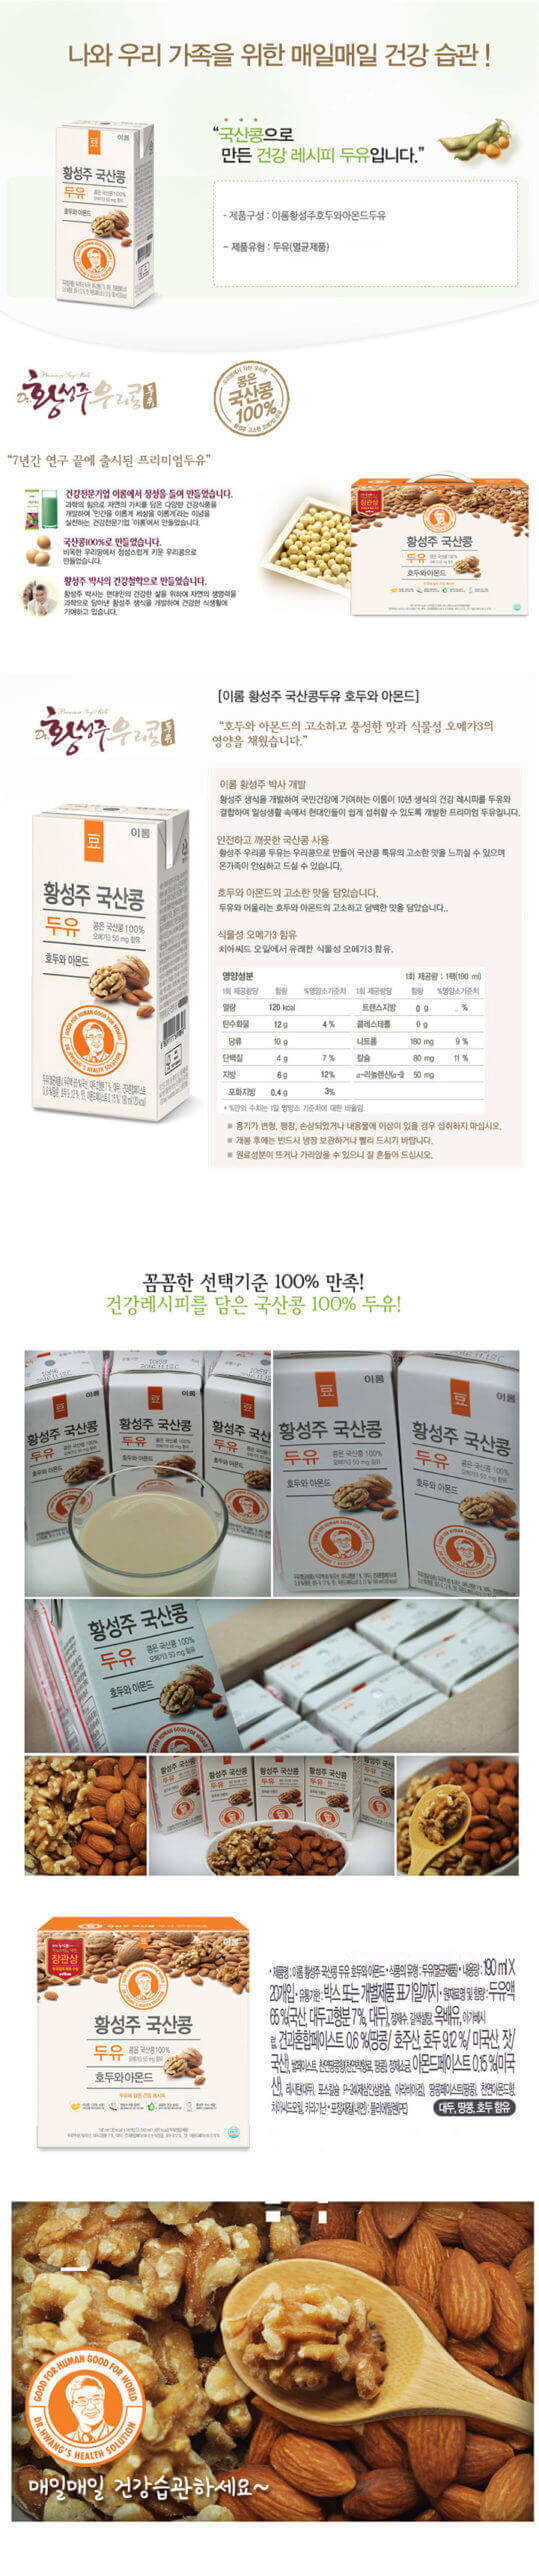 韓國食品-[이롬] 황성주 국산콩 두유 [호두와아몬드] 190ml x16